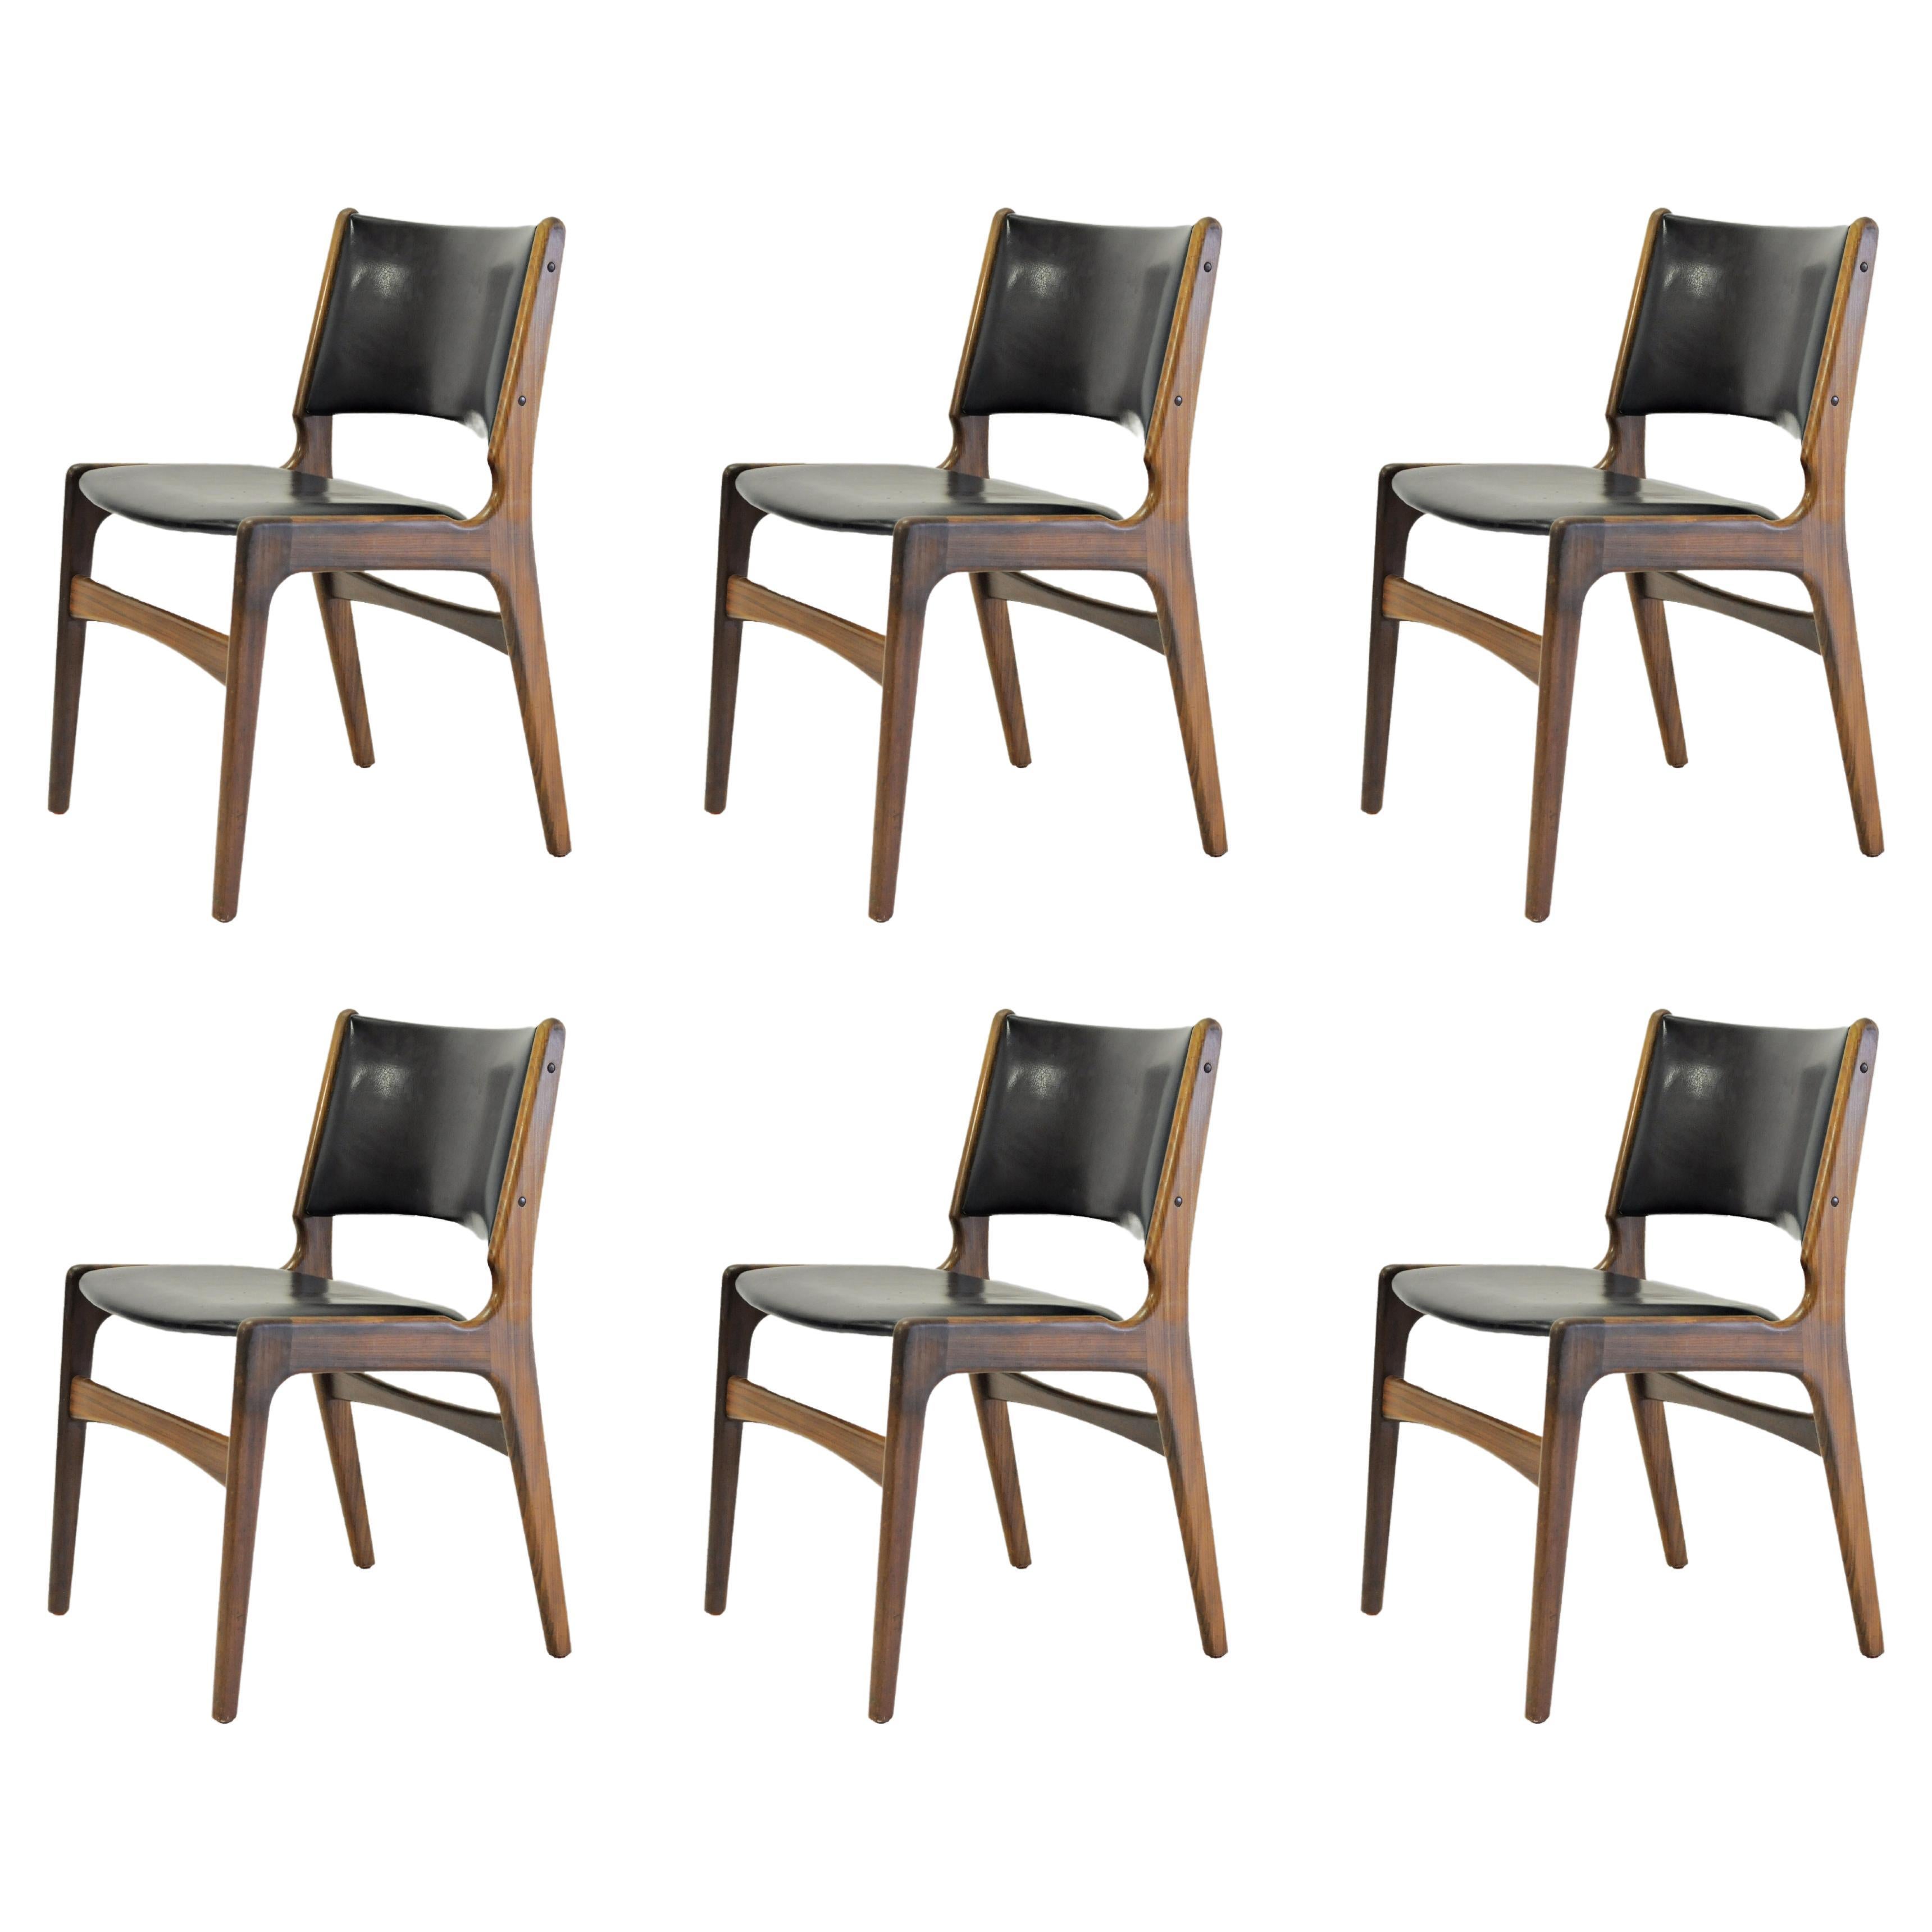 Six chaises de salle à manger restaurées Erik Buch en teck massif, tapissées sur mesure en vente